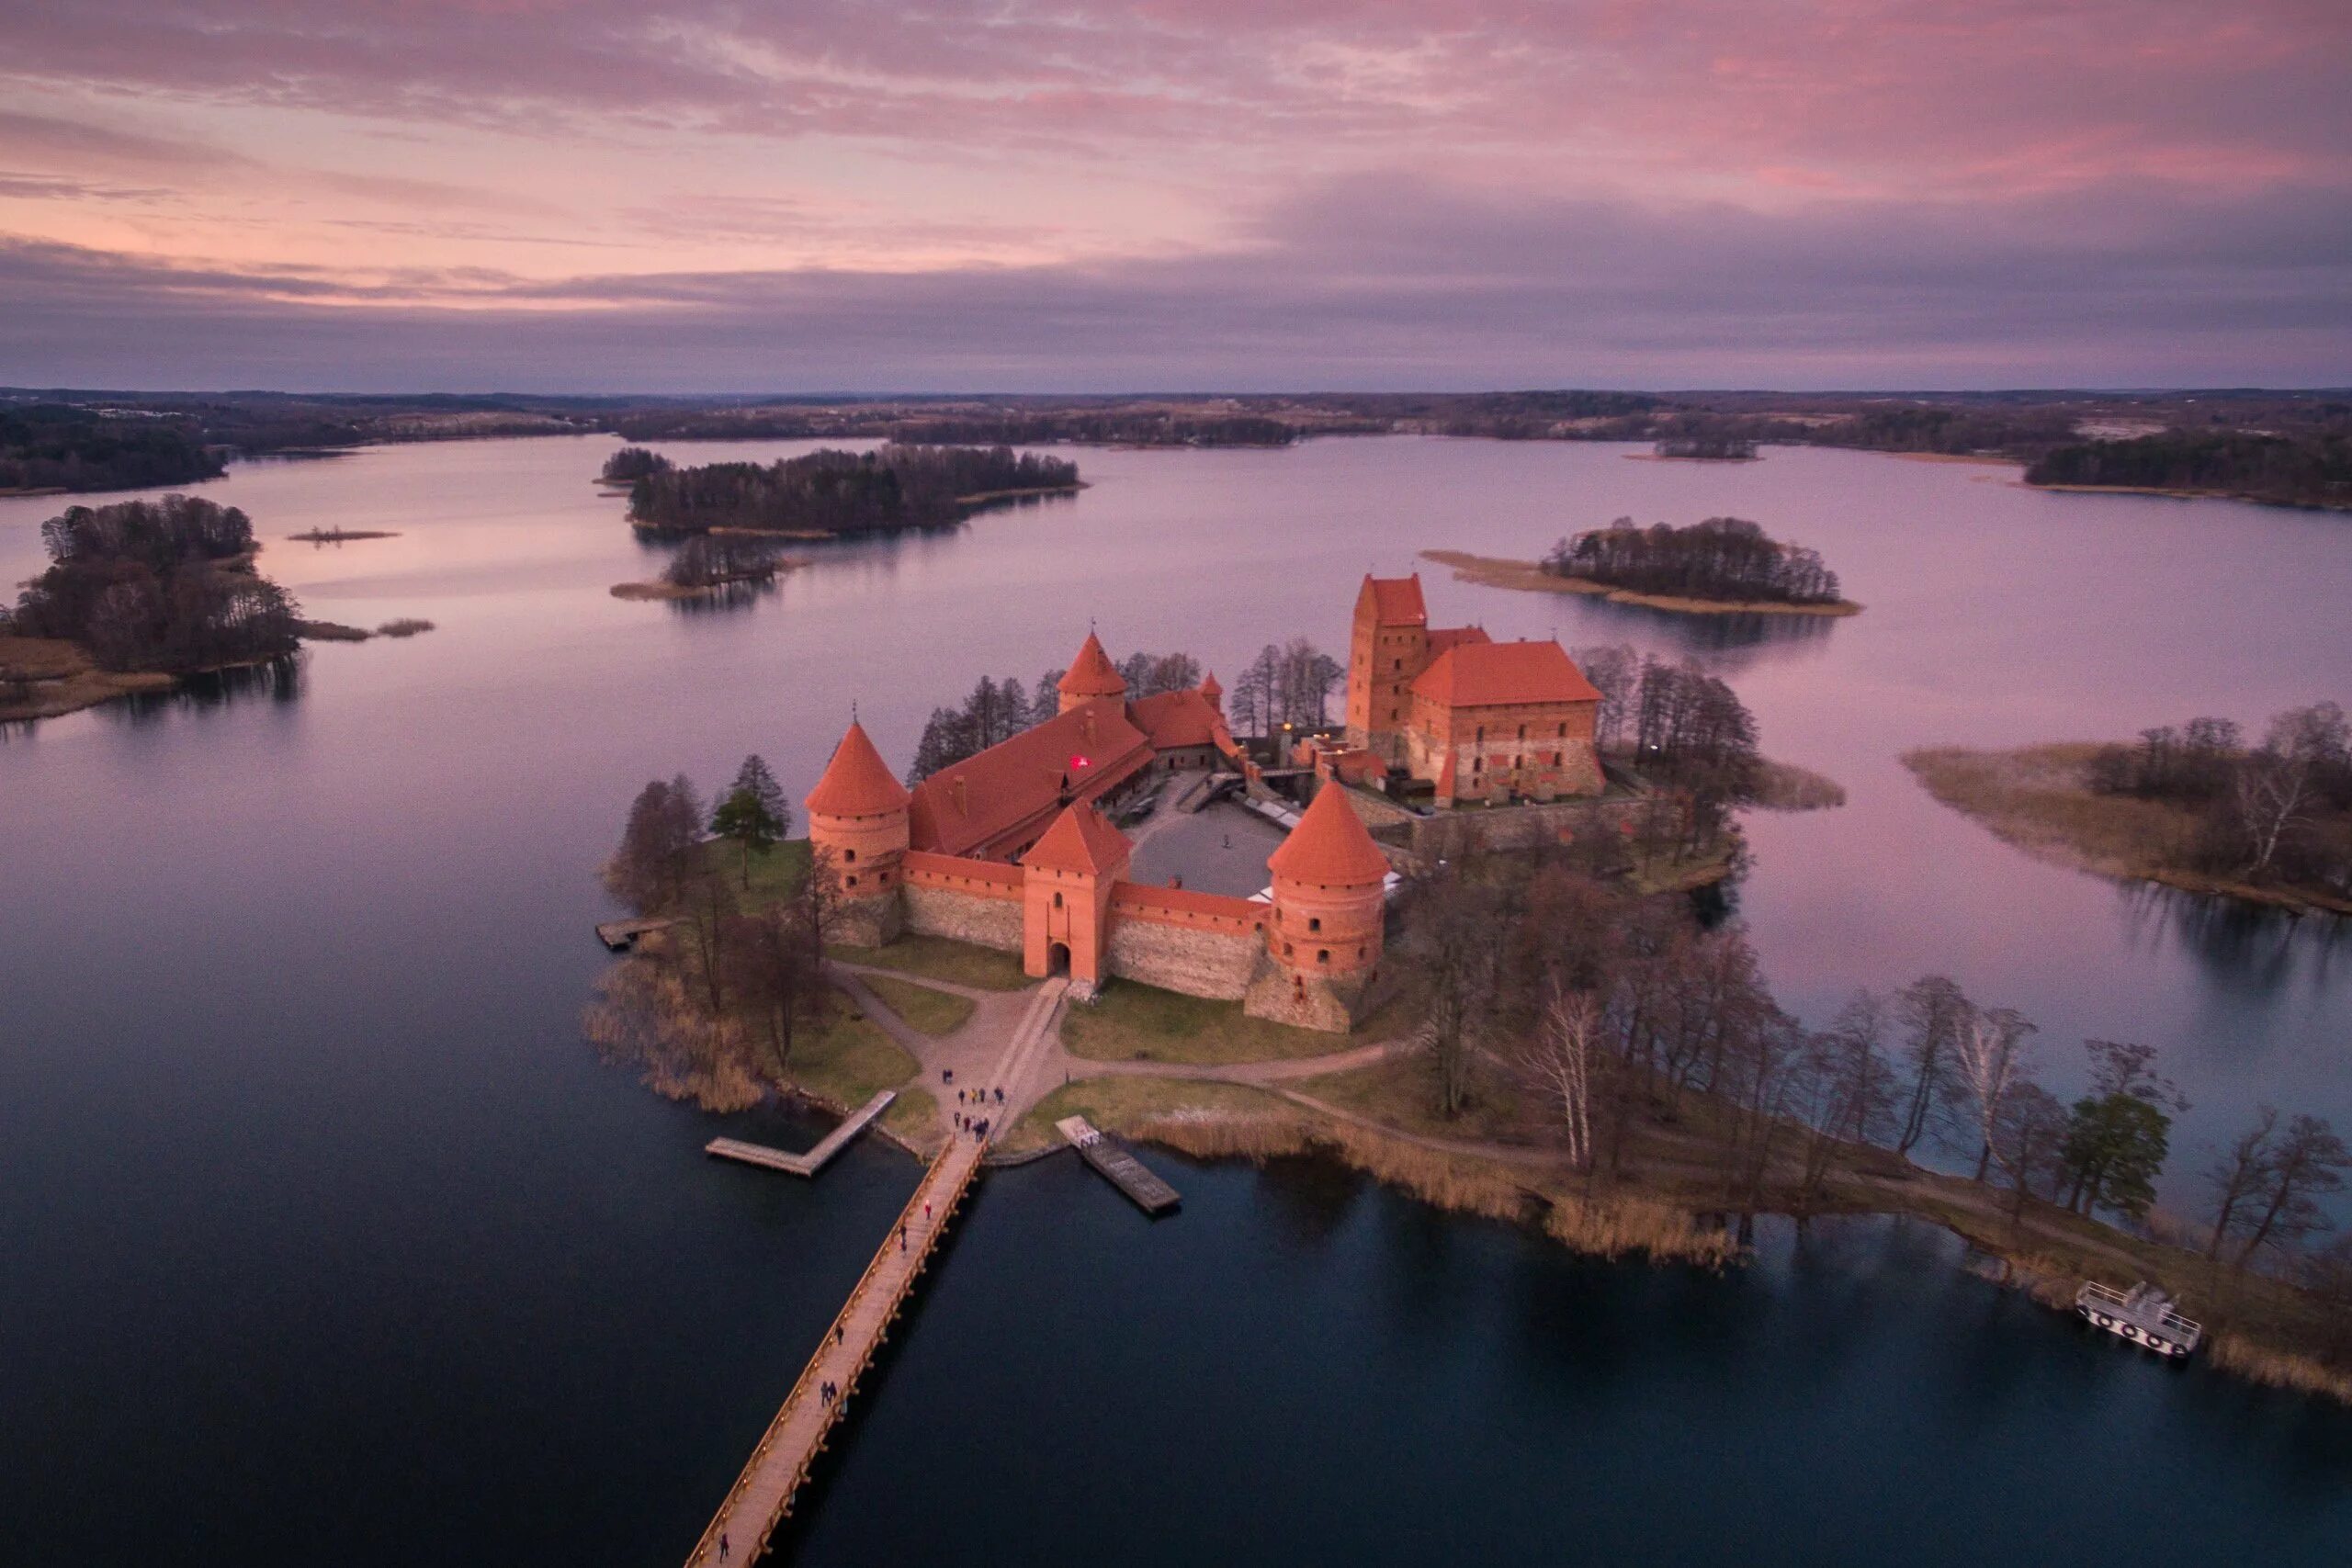 Тракайский замок. Тракайский замок Литва. Тракайский островной замок. Озеро Тракай Литва. Крепость Тракай Литва.